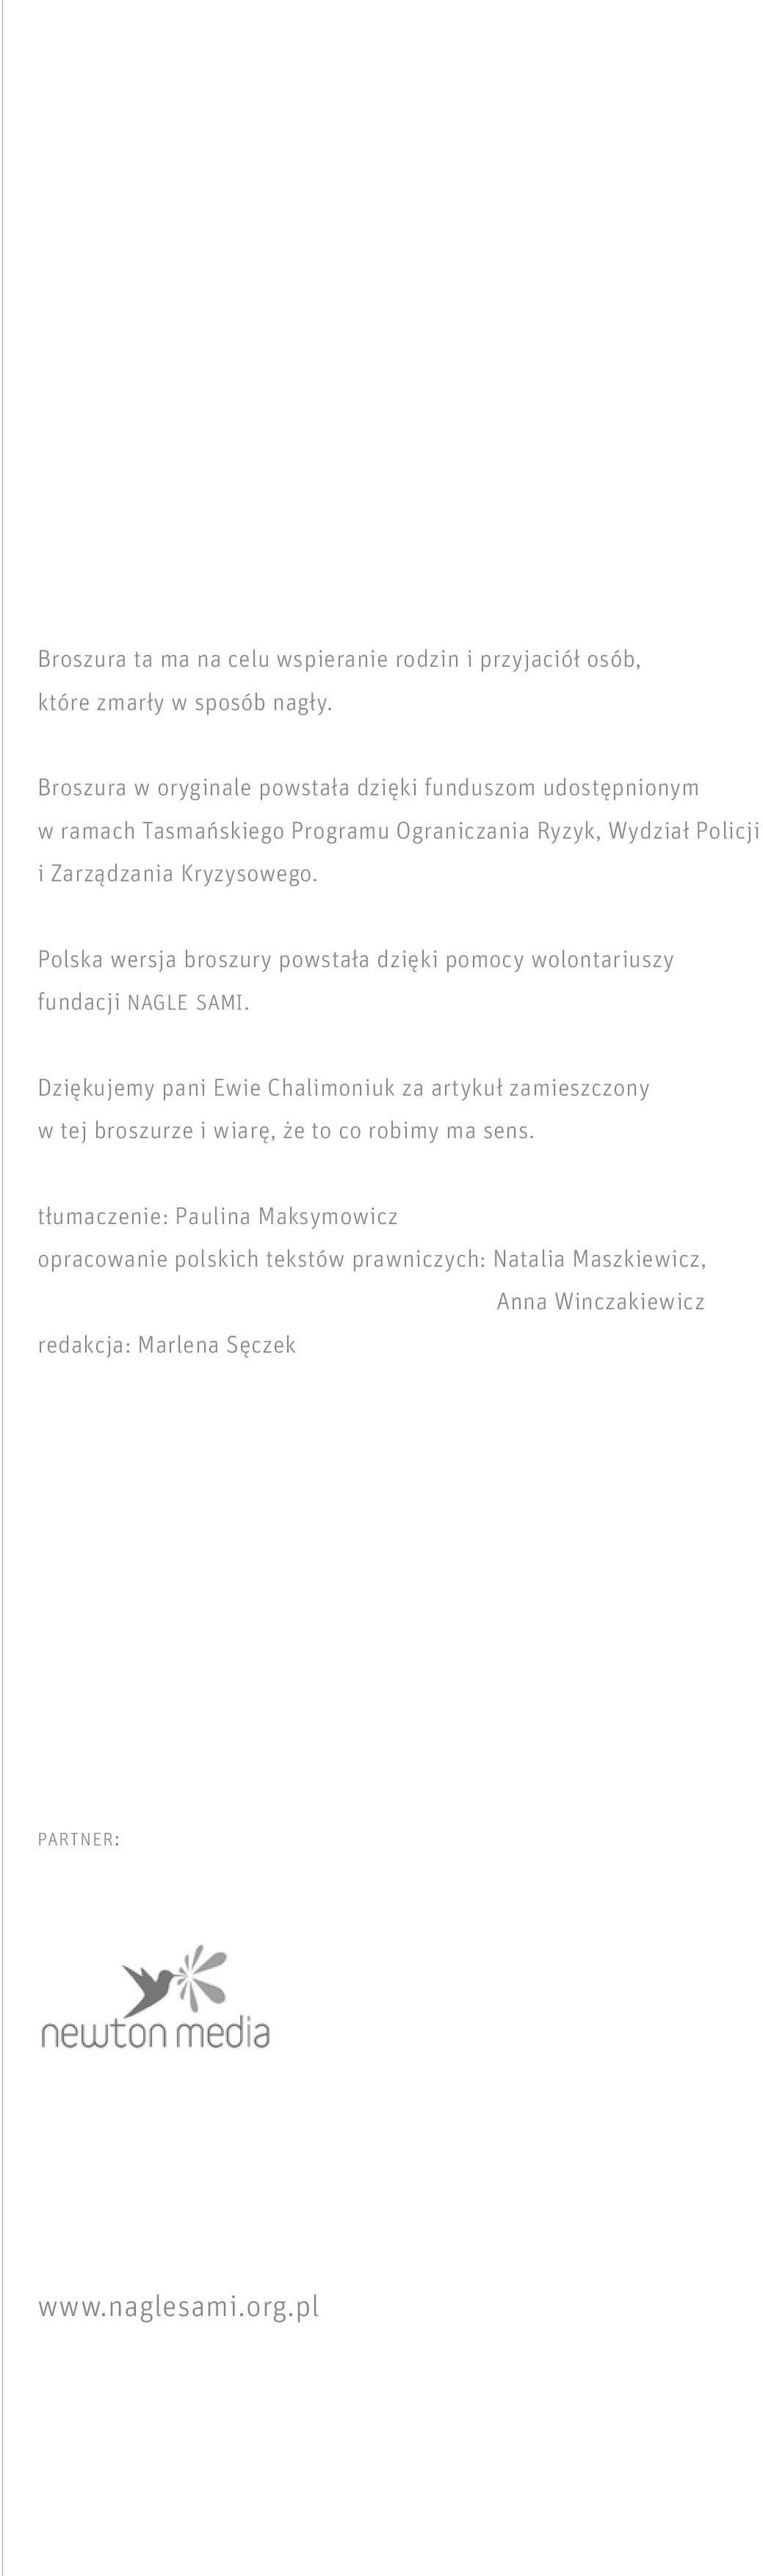 Kryzysowego. Polska wersja broszury powstała dzięki pomocy wolontariuszy fundacji nagle sami.